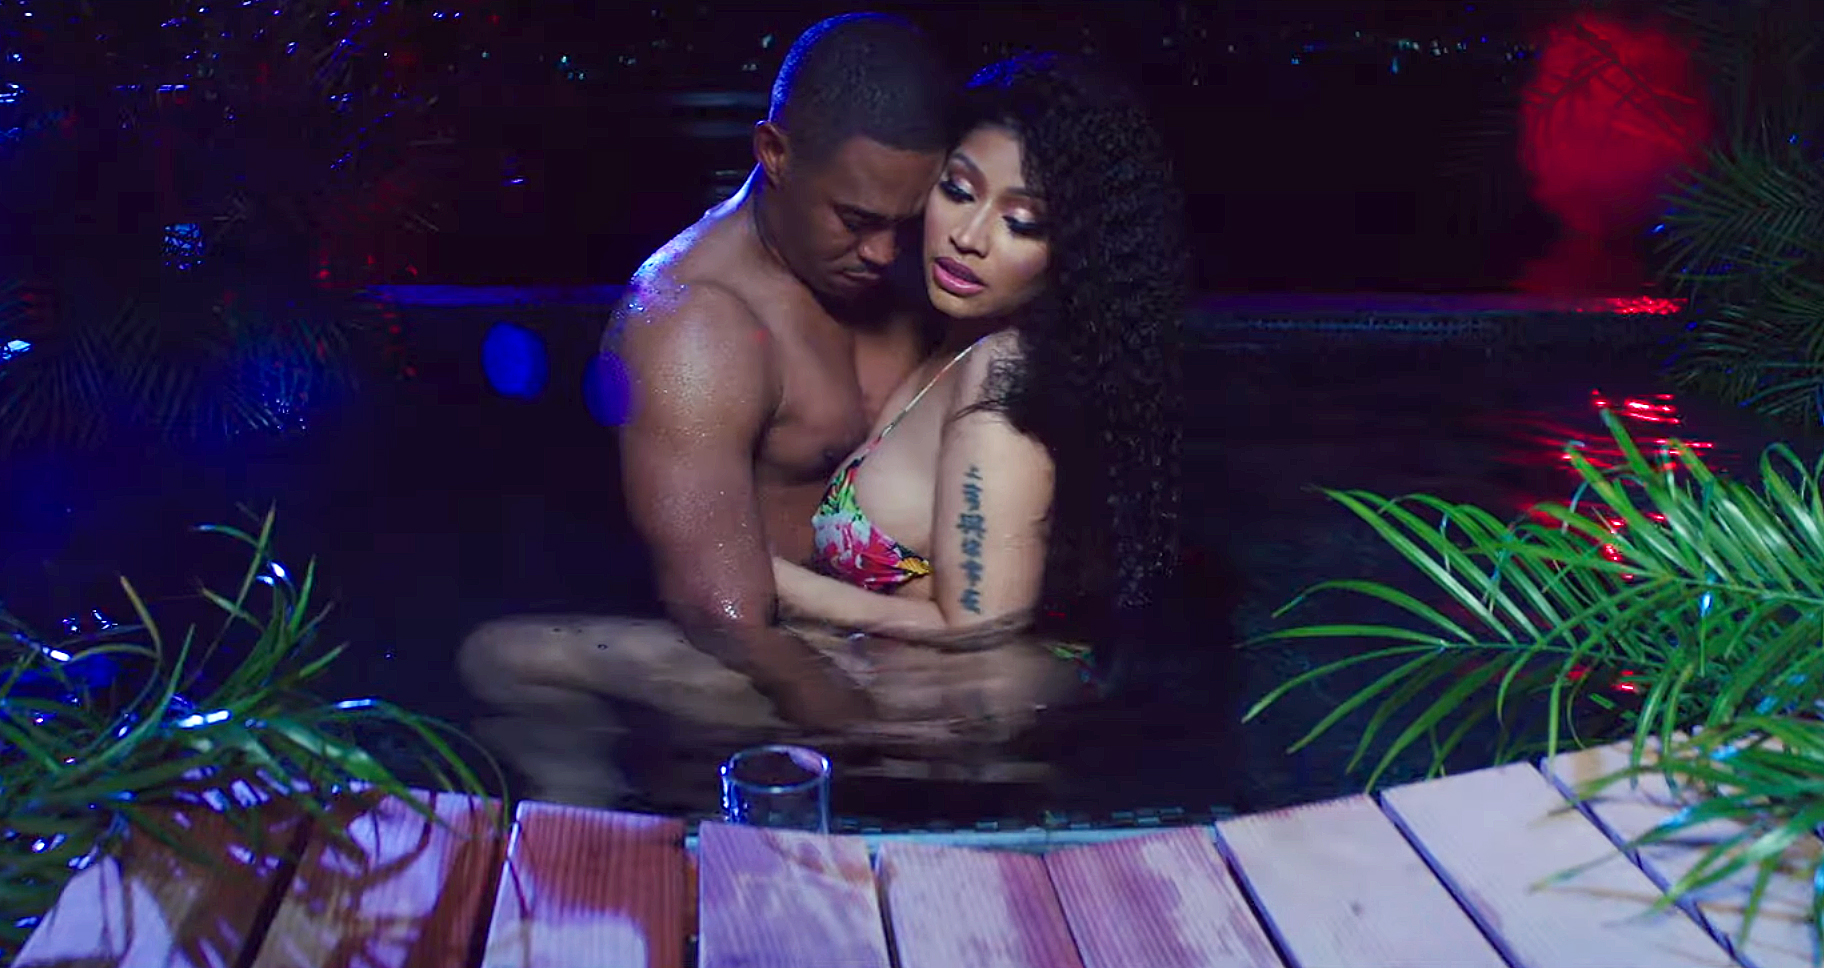 Nicki Minaj Sex Tape With The Game